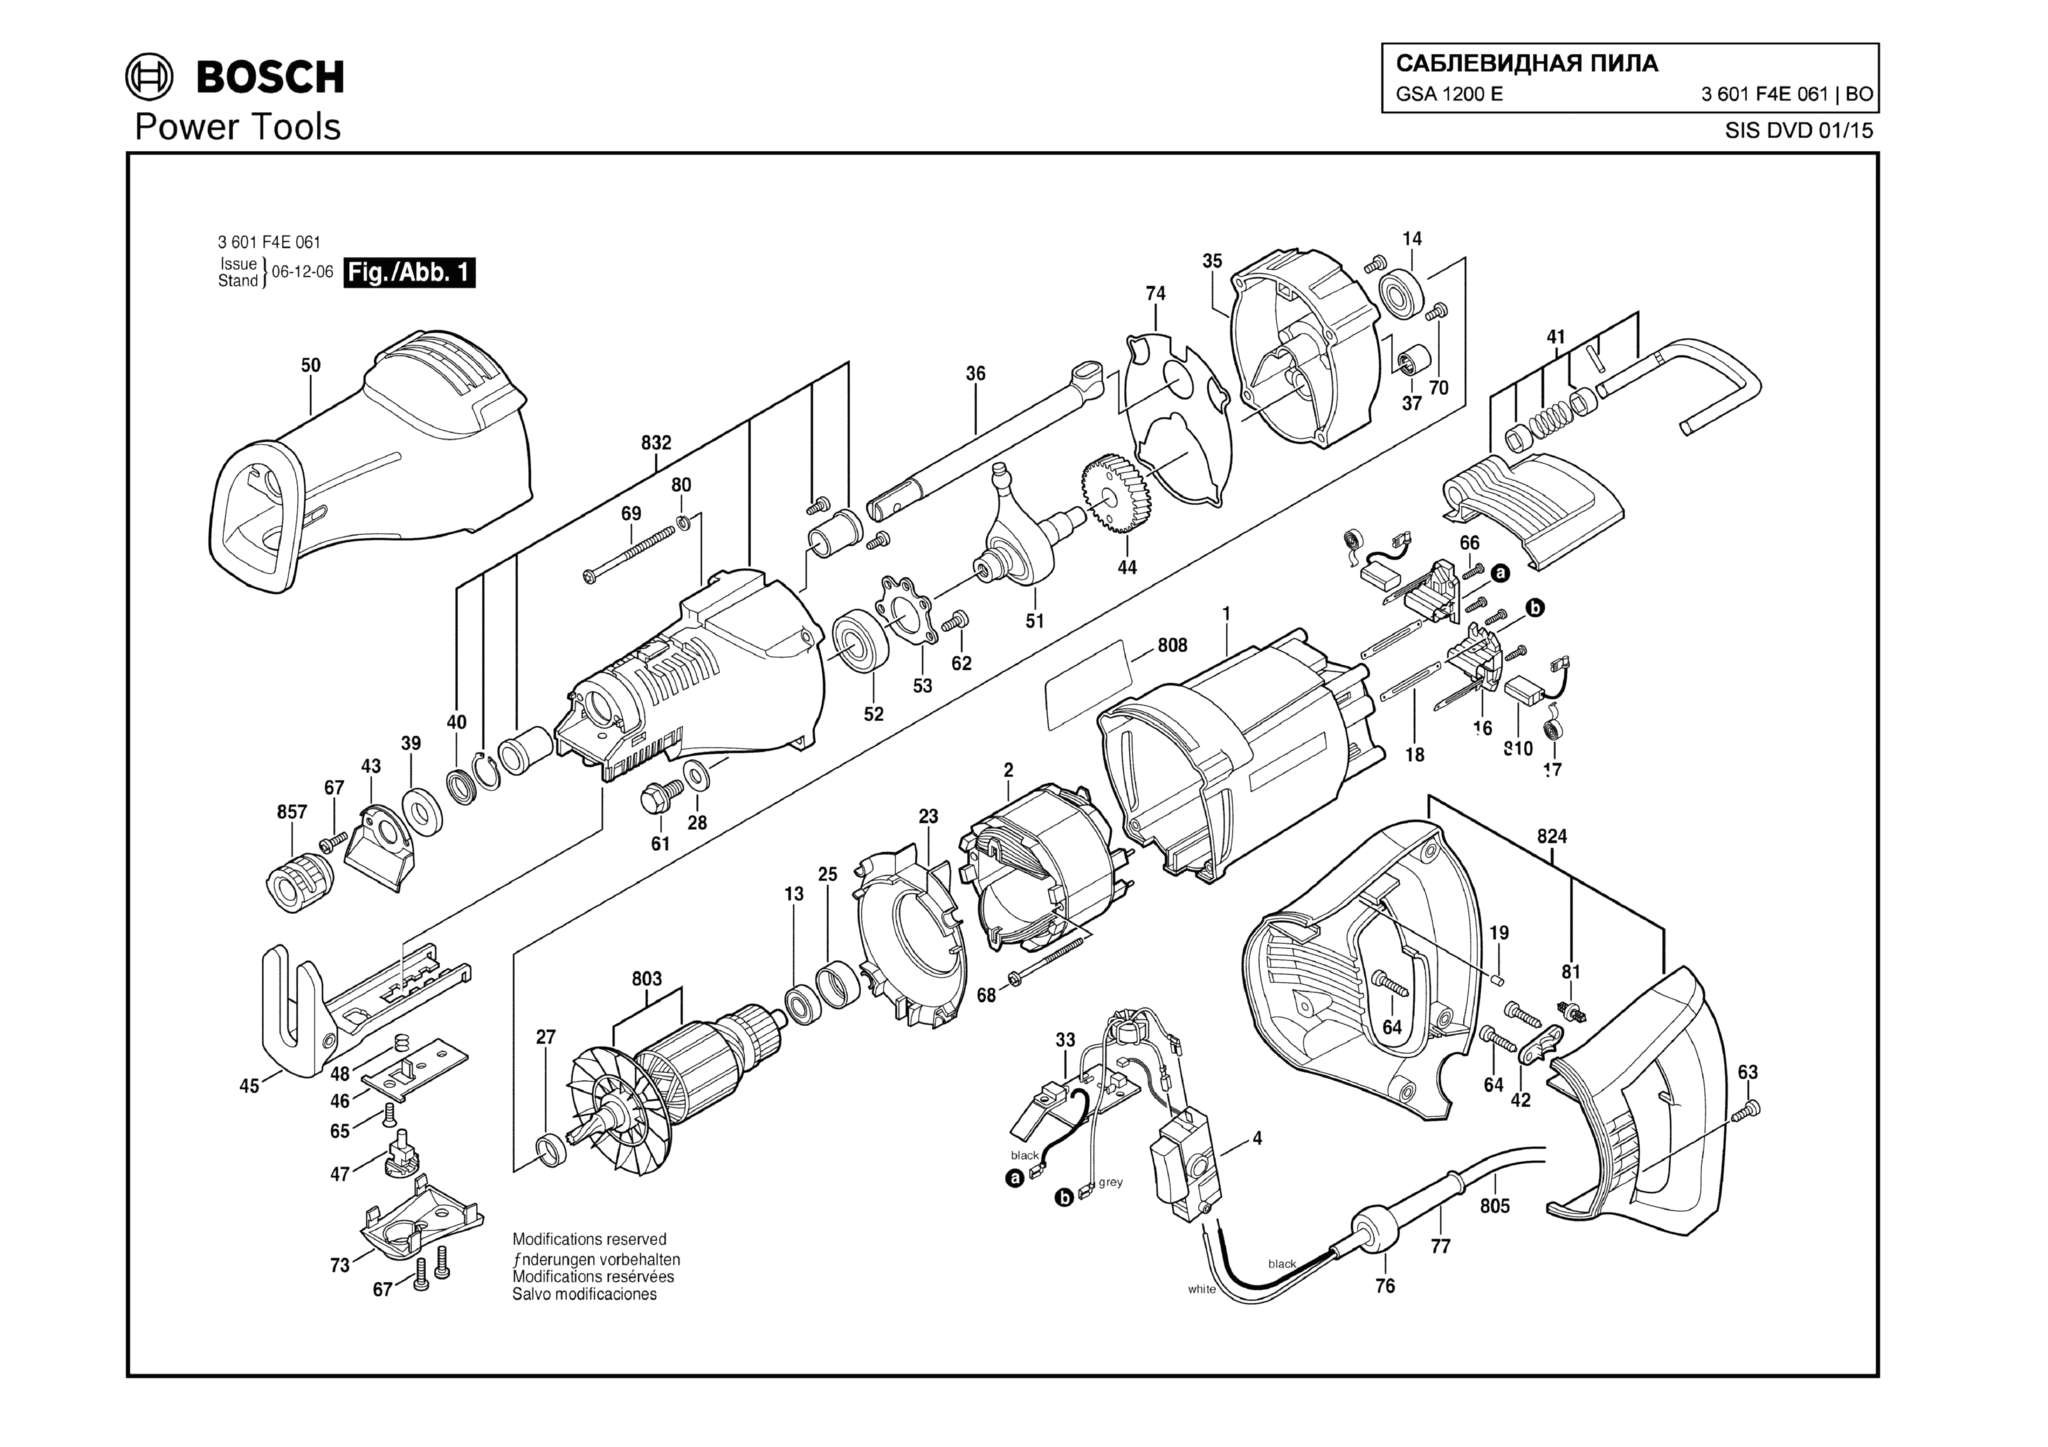 Запчасти, схема и деталировка Bosch GSA 1200 E (ТИП 3601F4E061)